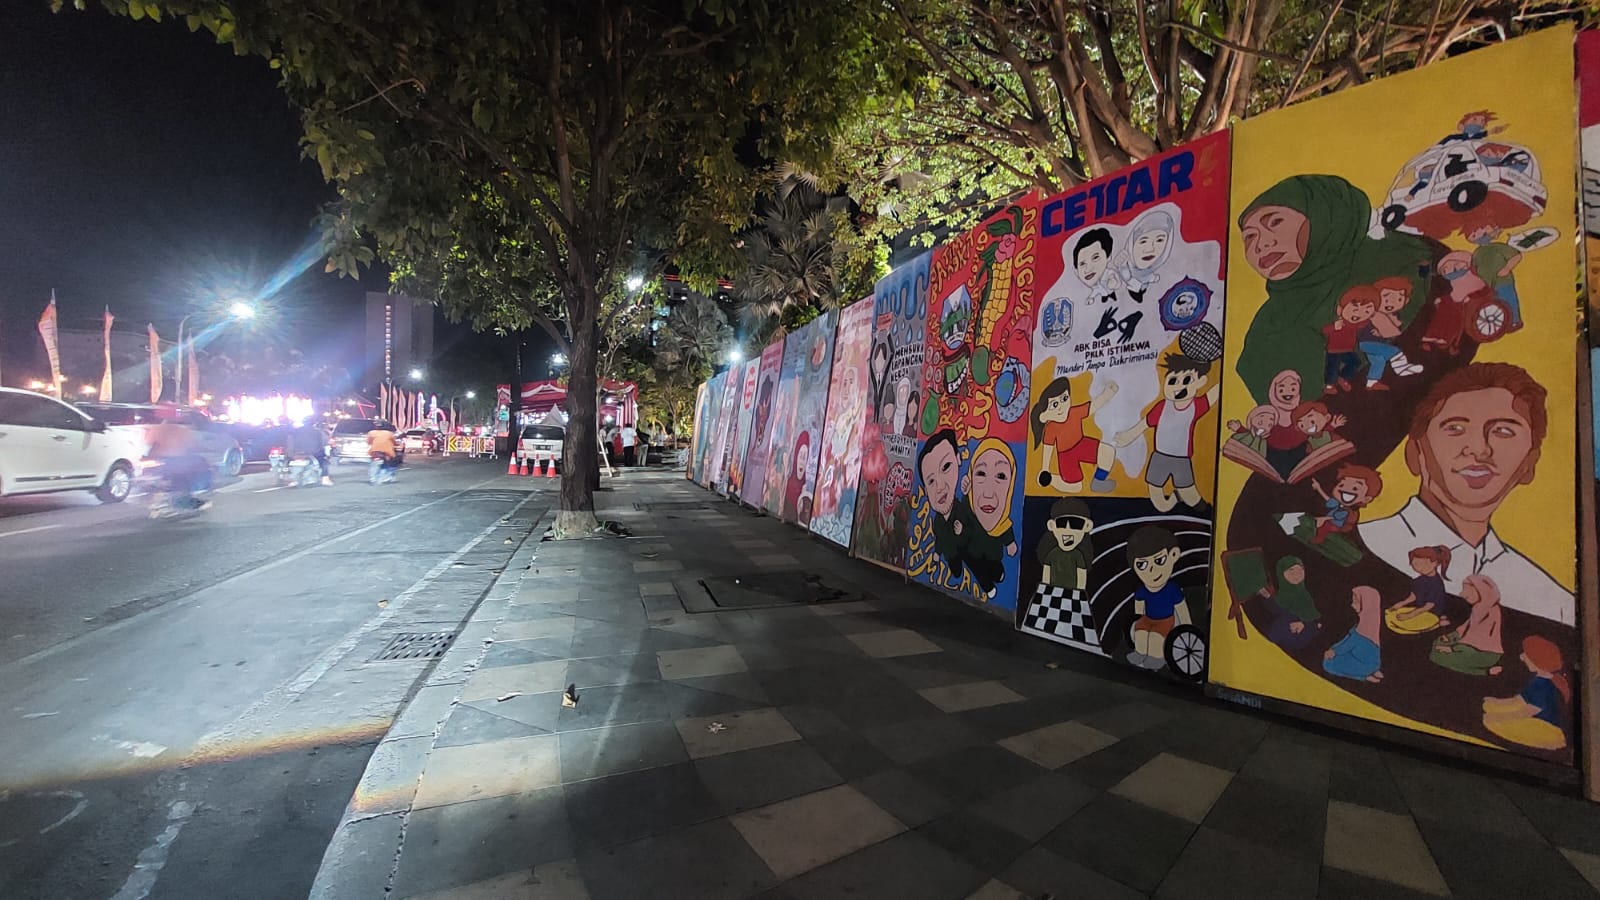 Jelang Peringatan HUT Ke-78 Pemprov Jatim, Ratusan Mural Berjejer di Jalan Gubernur Suryo Surabaya